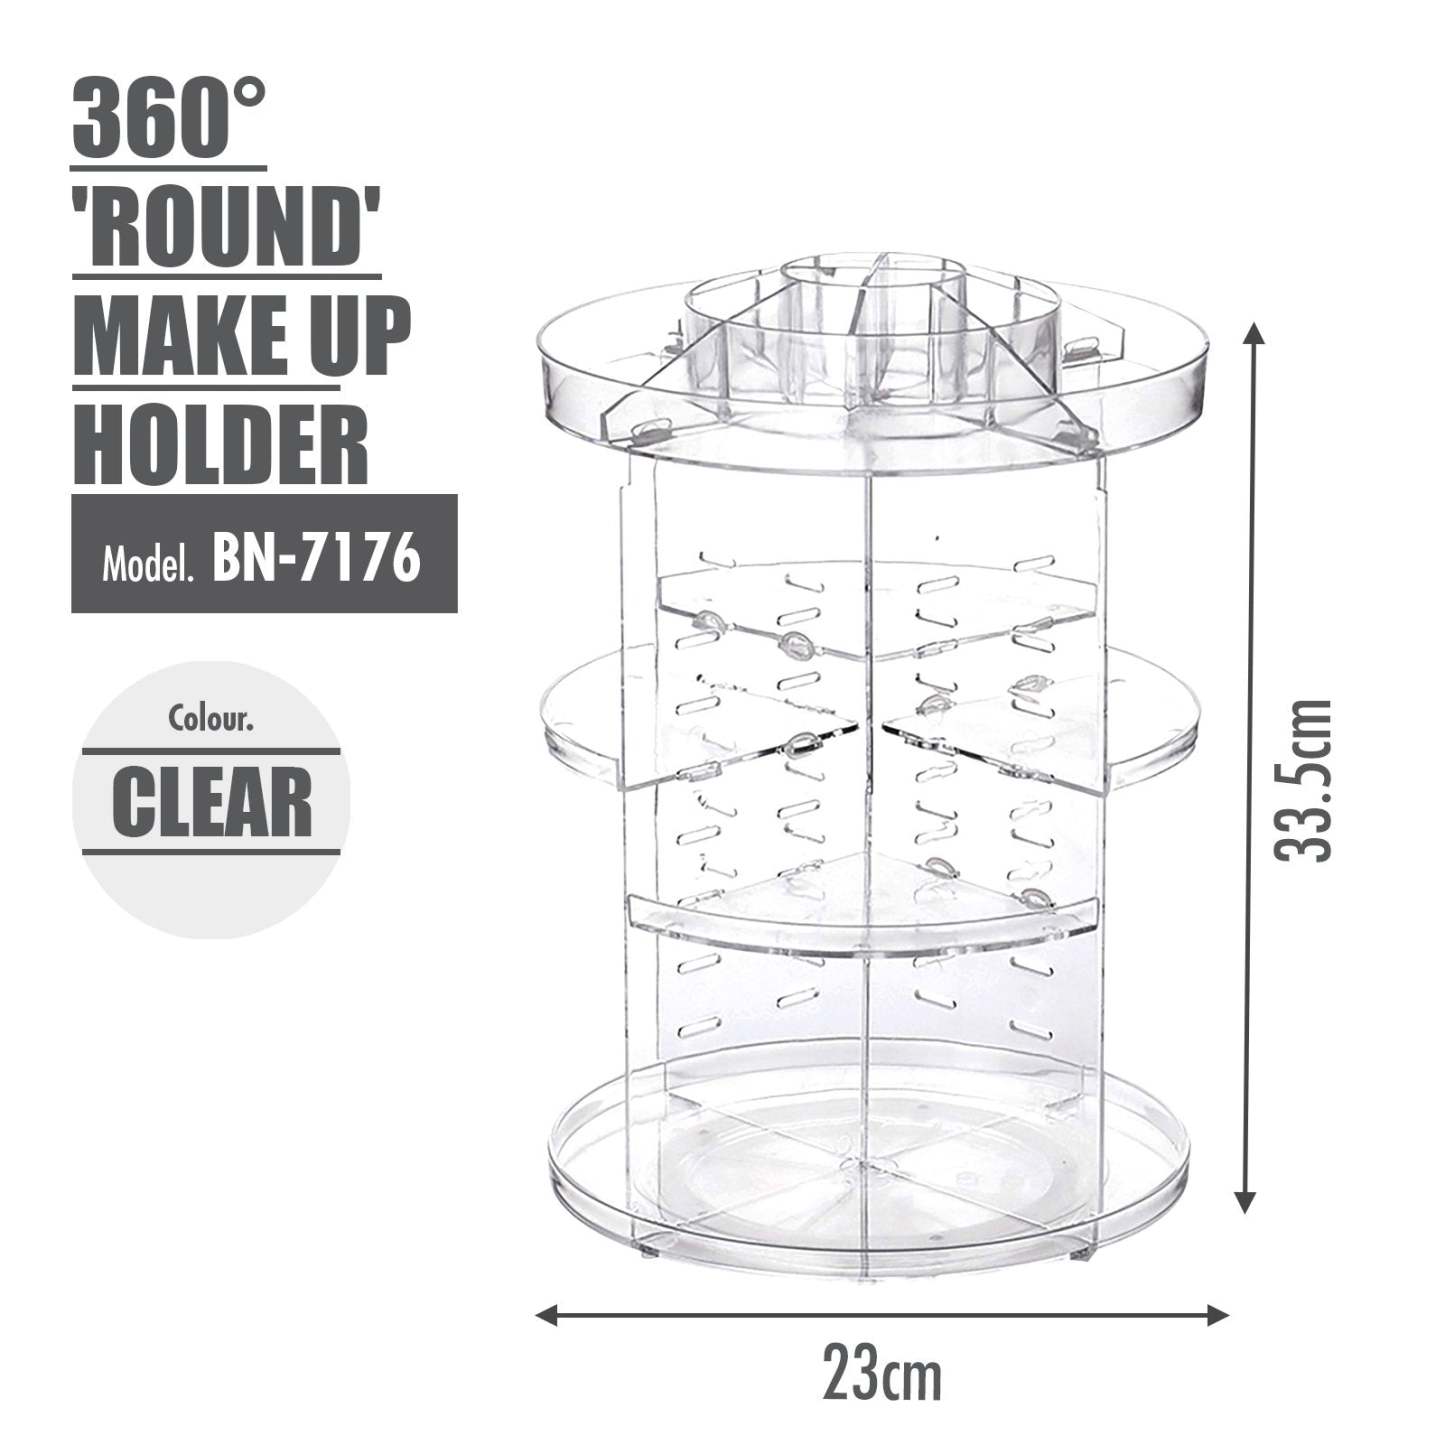 360 Degree 'ROUND' Make Up Holder - HOUZE - The Homeware Superstore